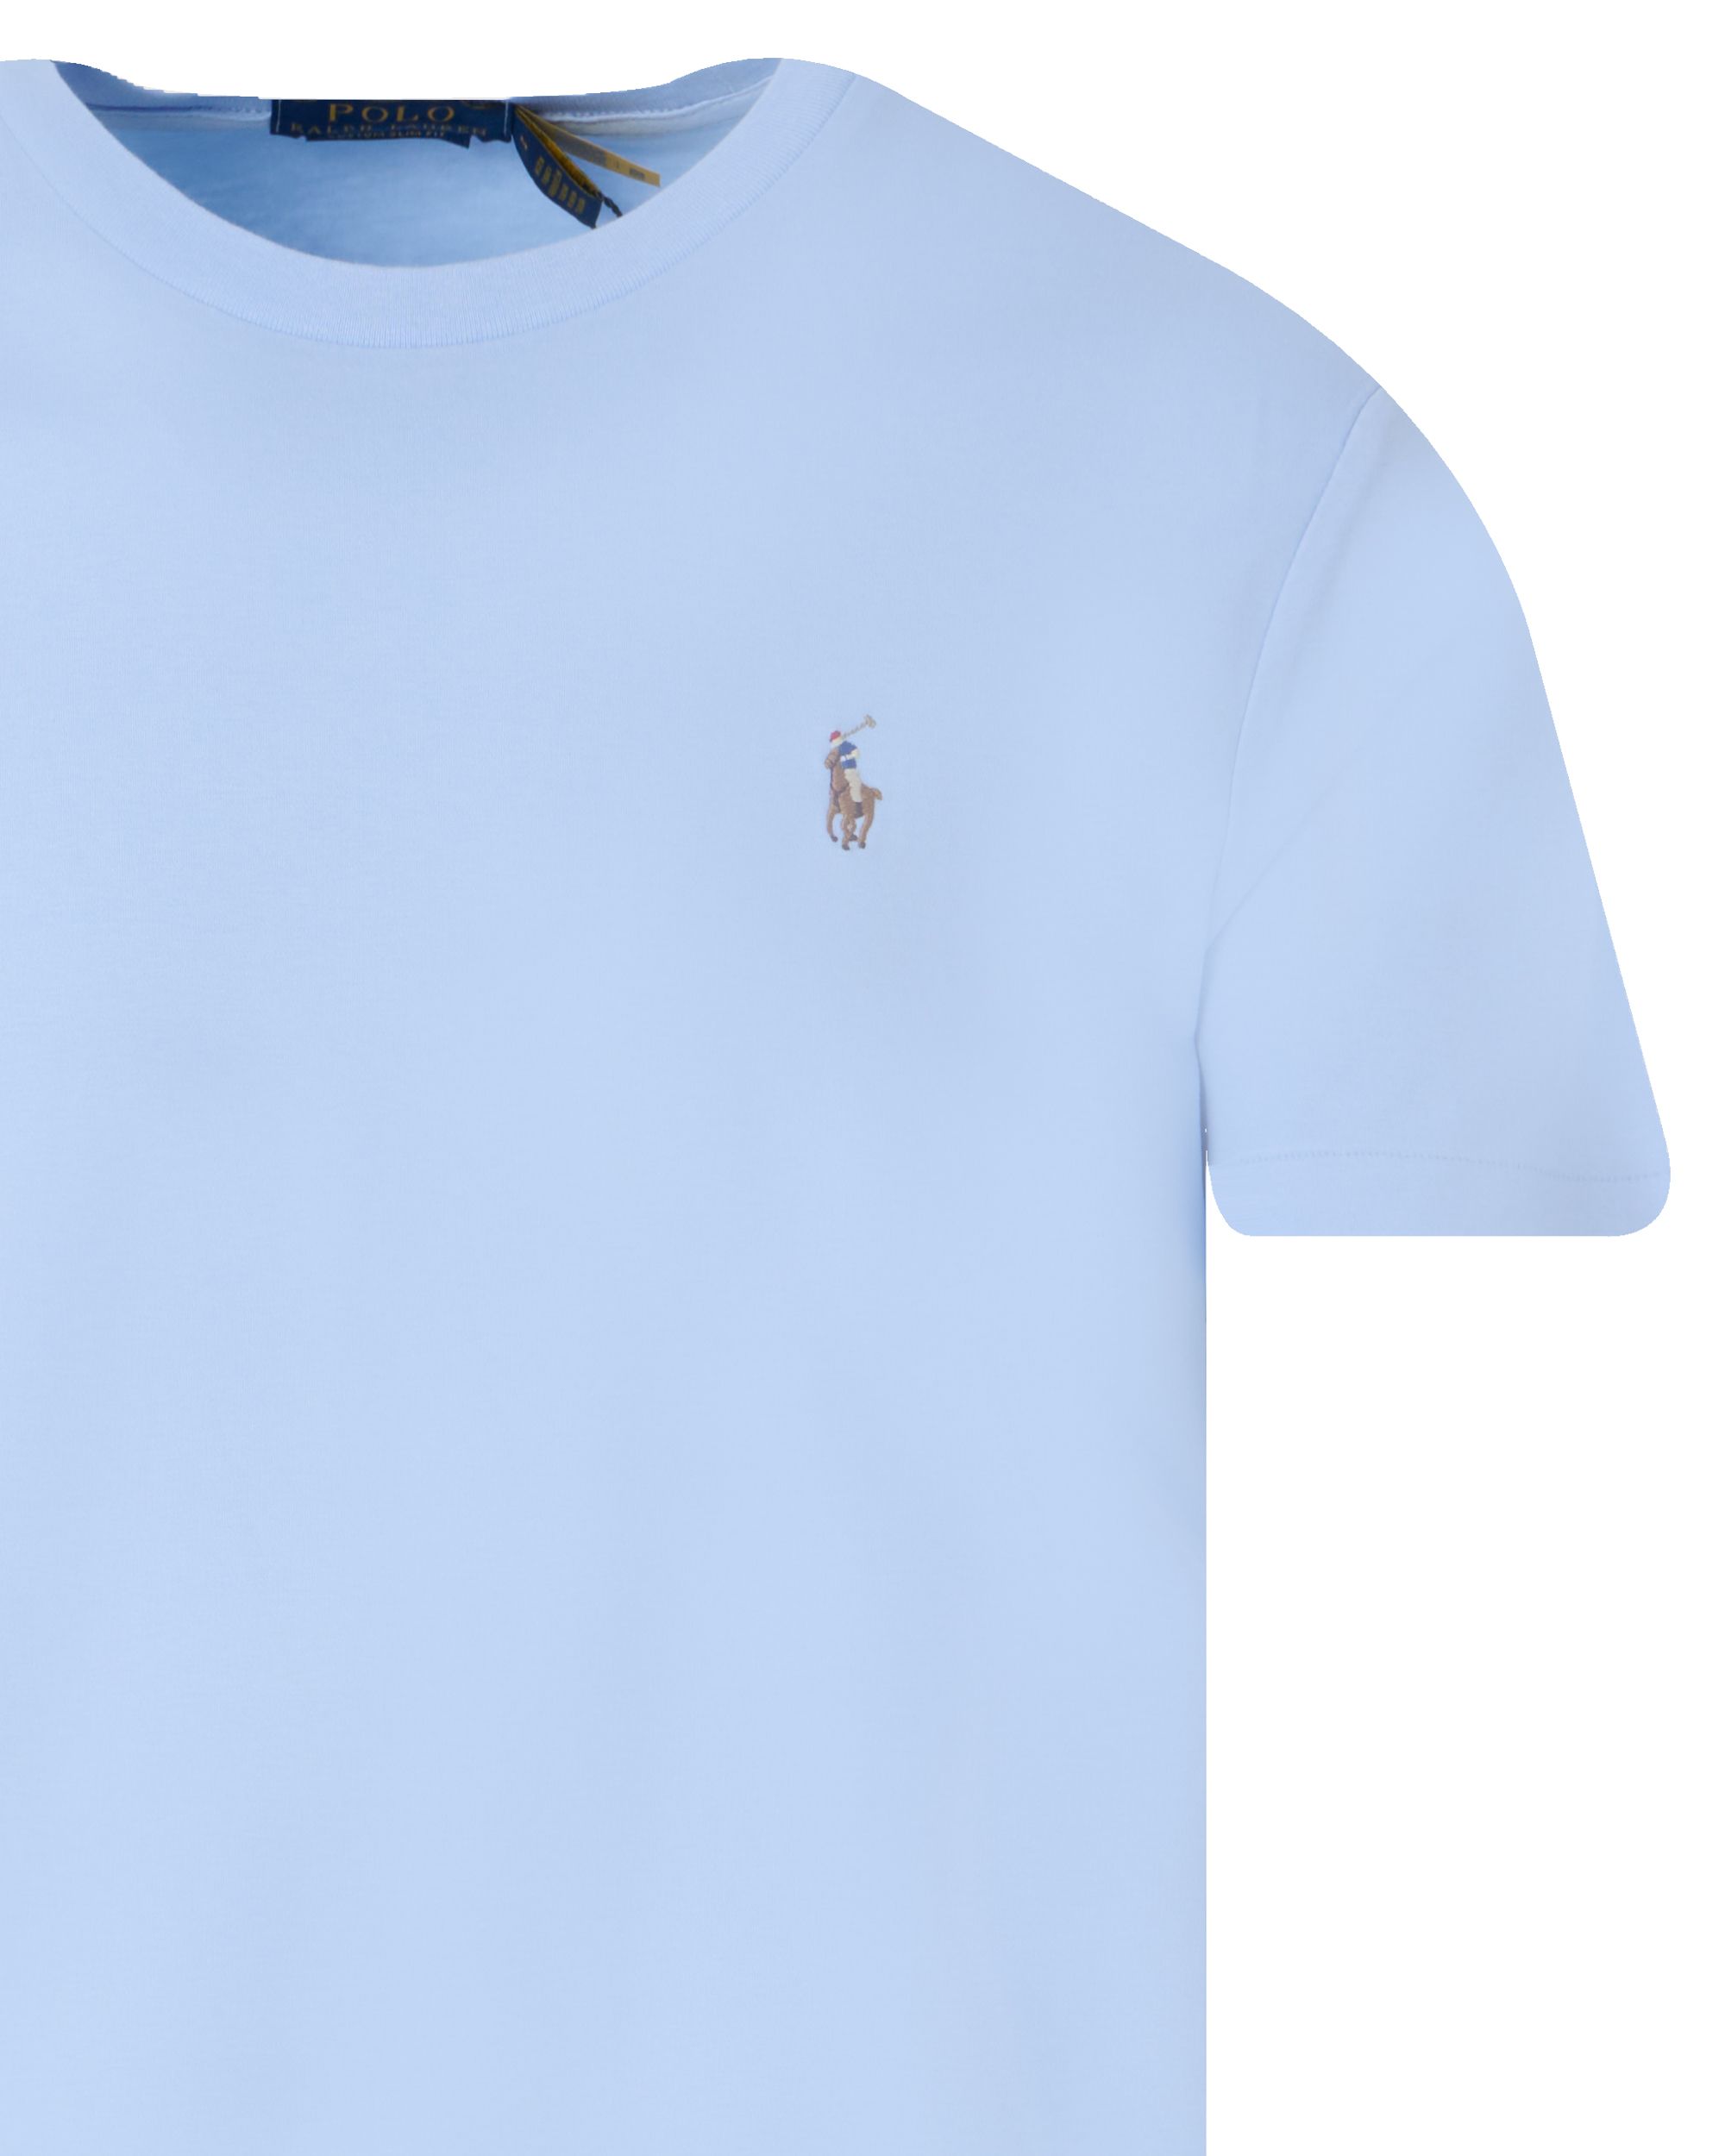 Polo Ralph Lauren T-shirt KM Blauw 095290-001-L